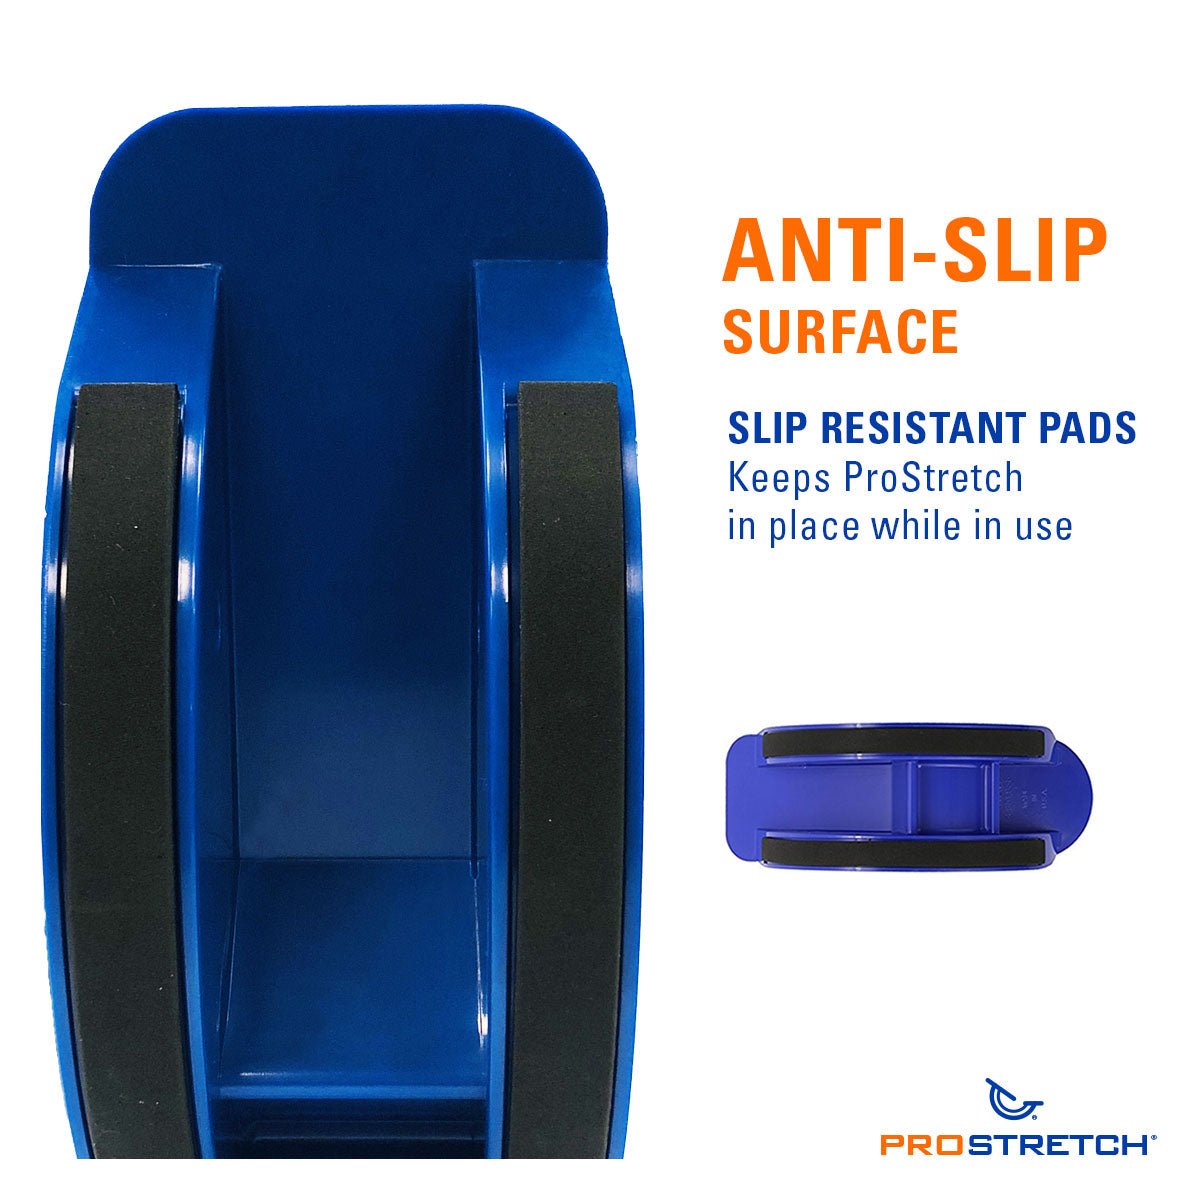 ProStretch anti-slip surface